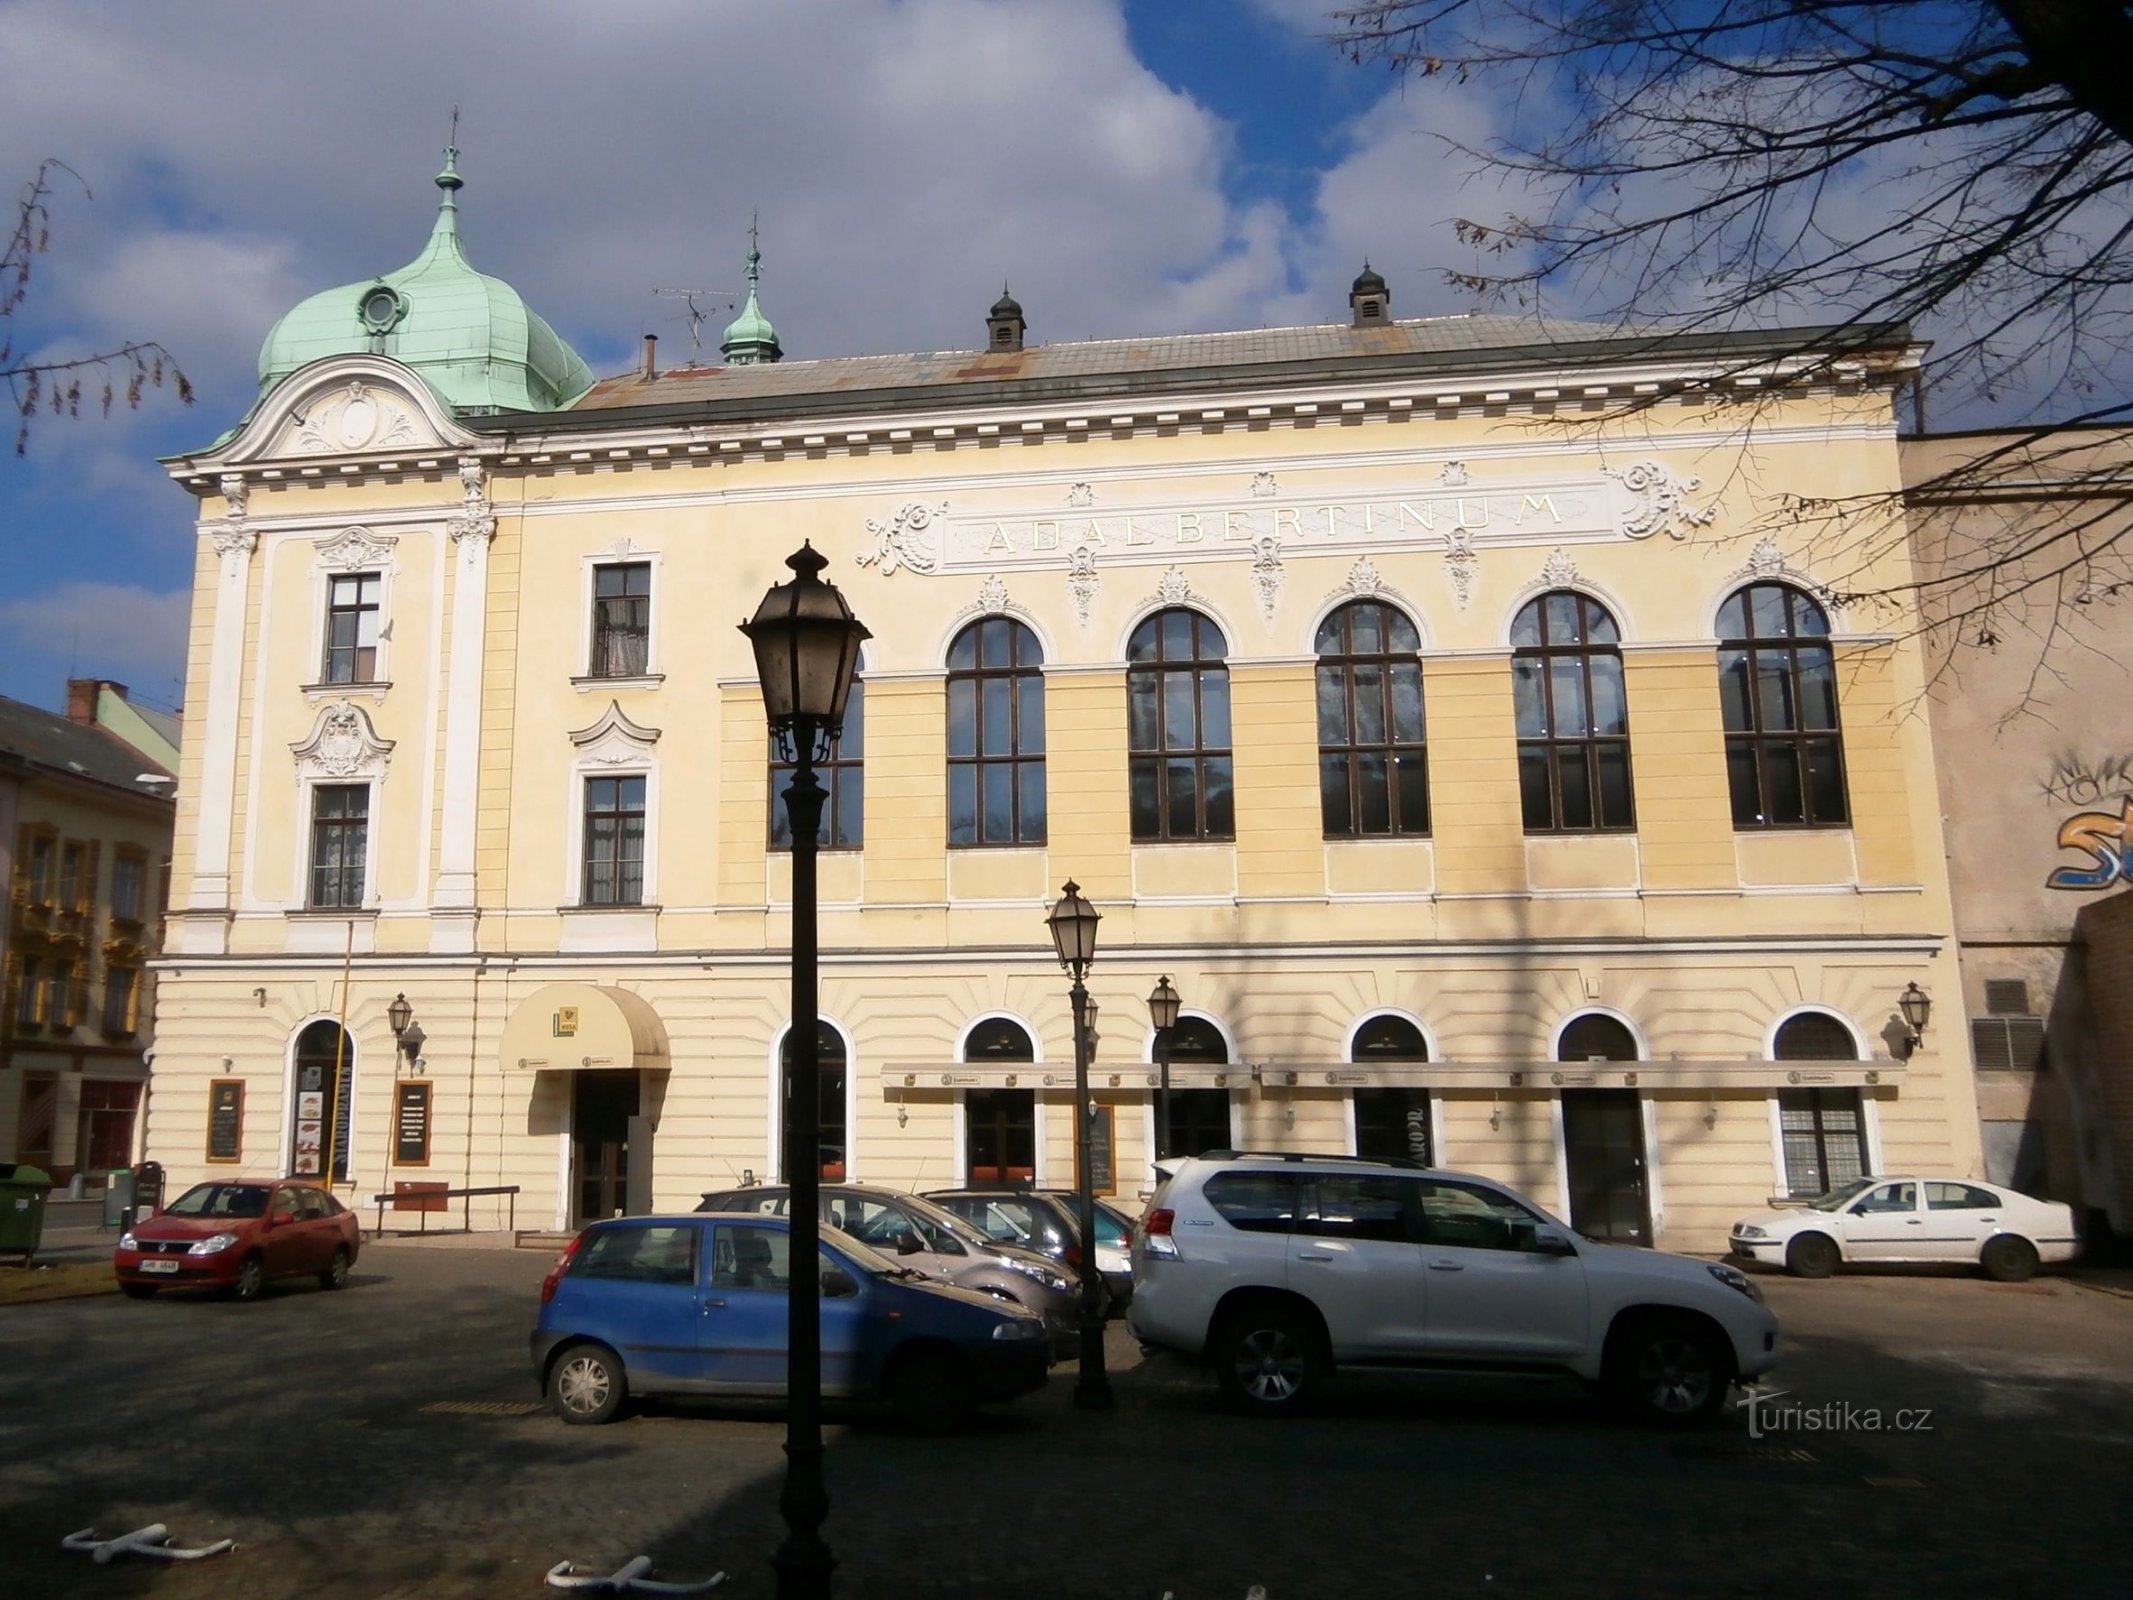 Adalbertinum (Hradec Králové, 1.3.2014)